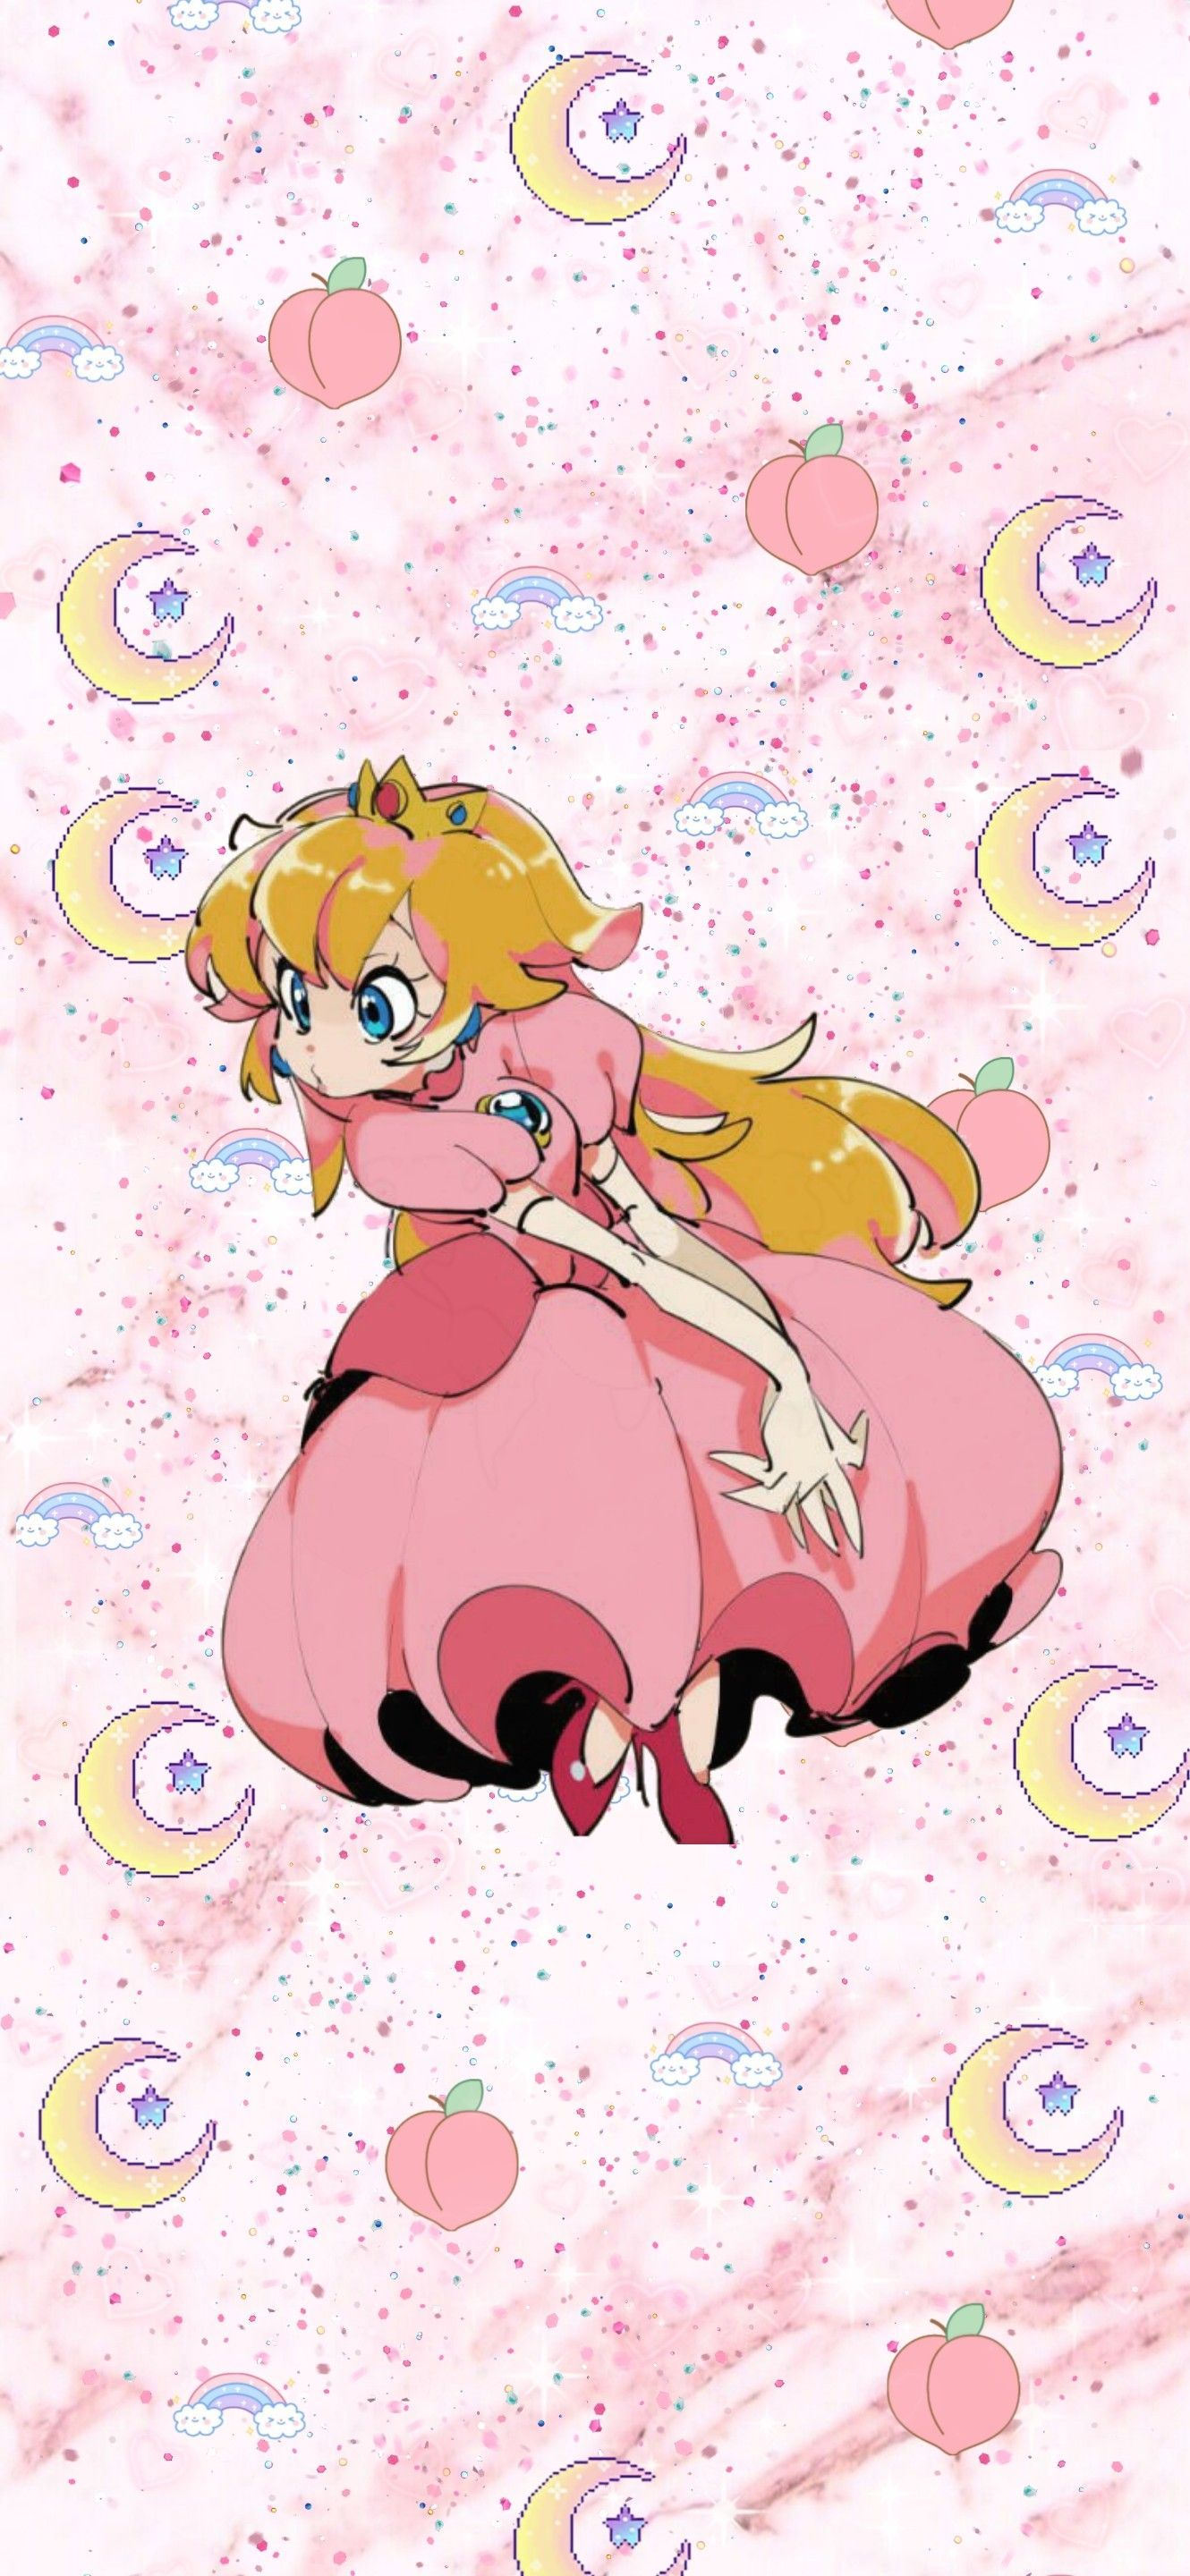 Princess peach wallpaper I made for my phone! - Peach, Nintendo, Princess Peach, Super Mario